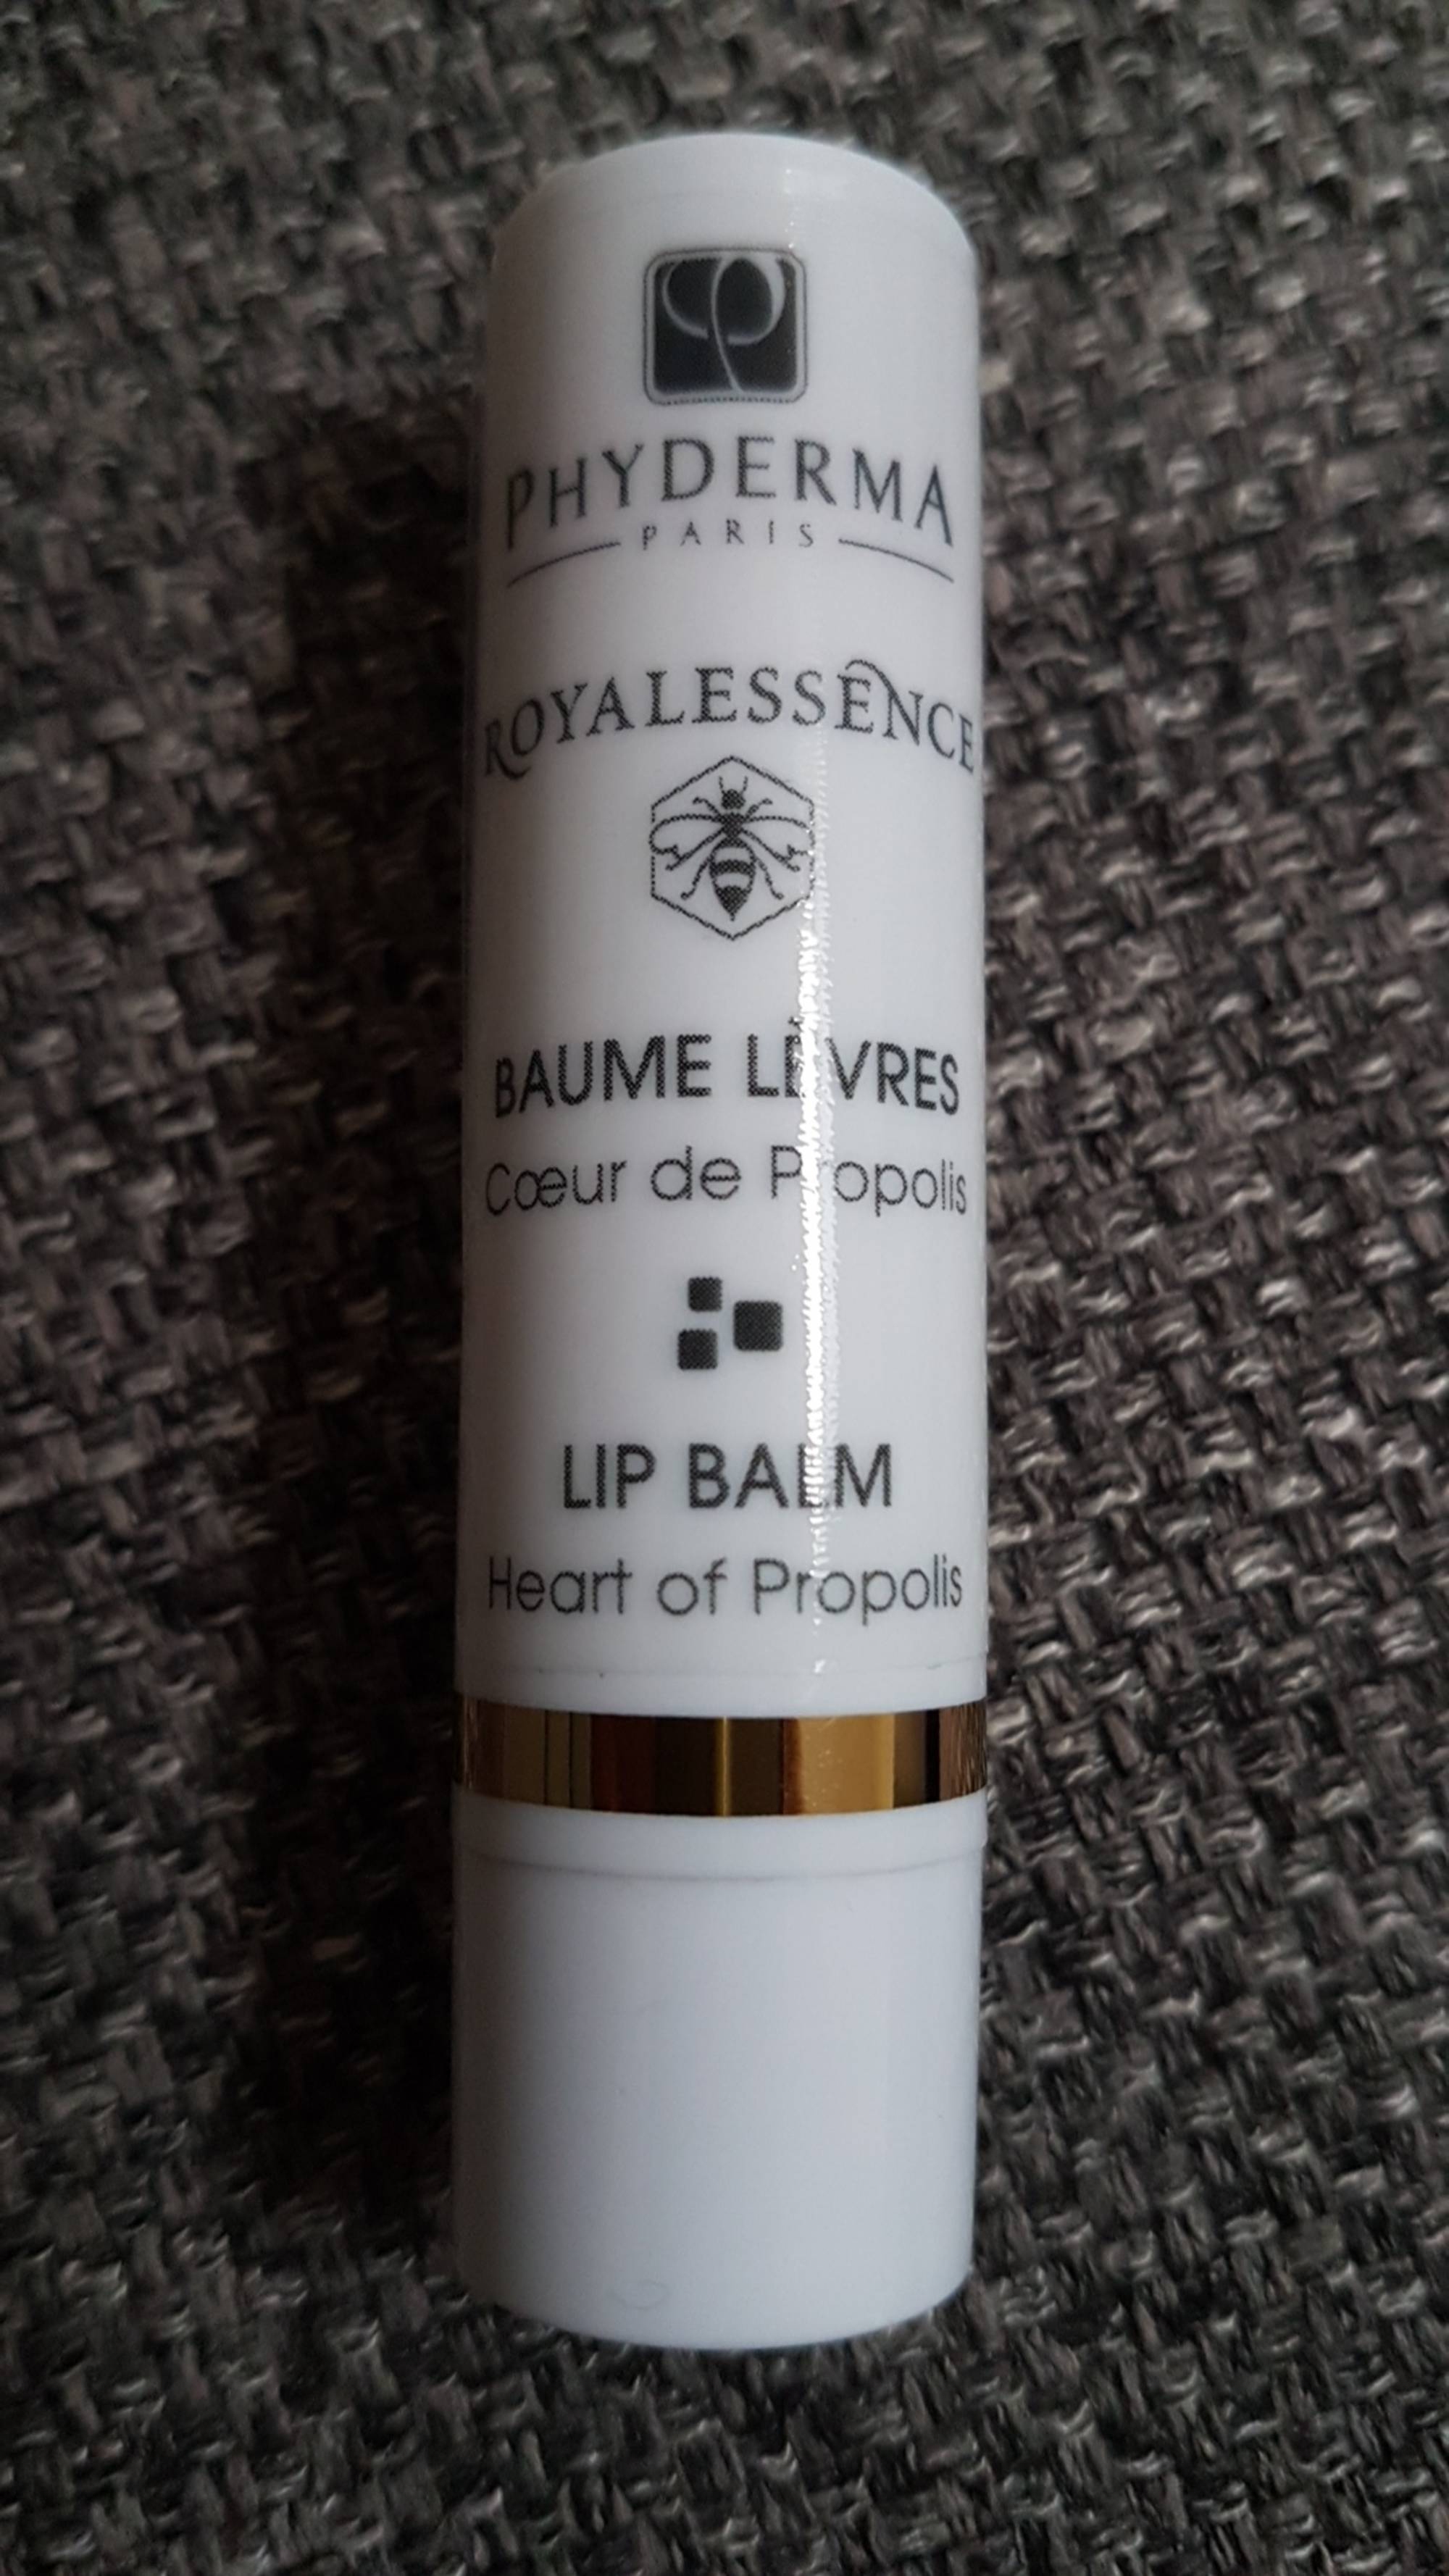 PHYDERMA - Royalessence - Baume lèvres cœur de propolis